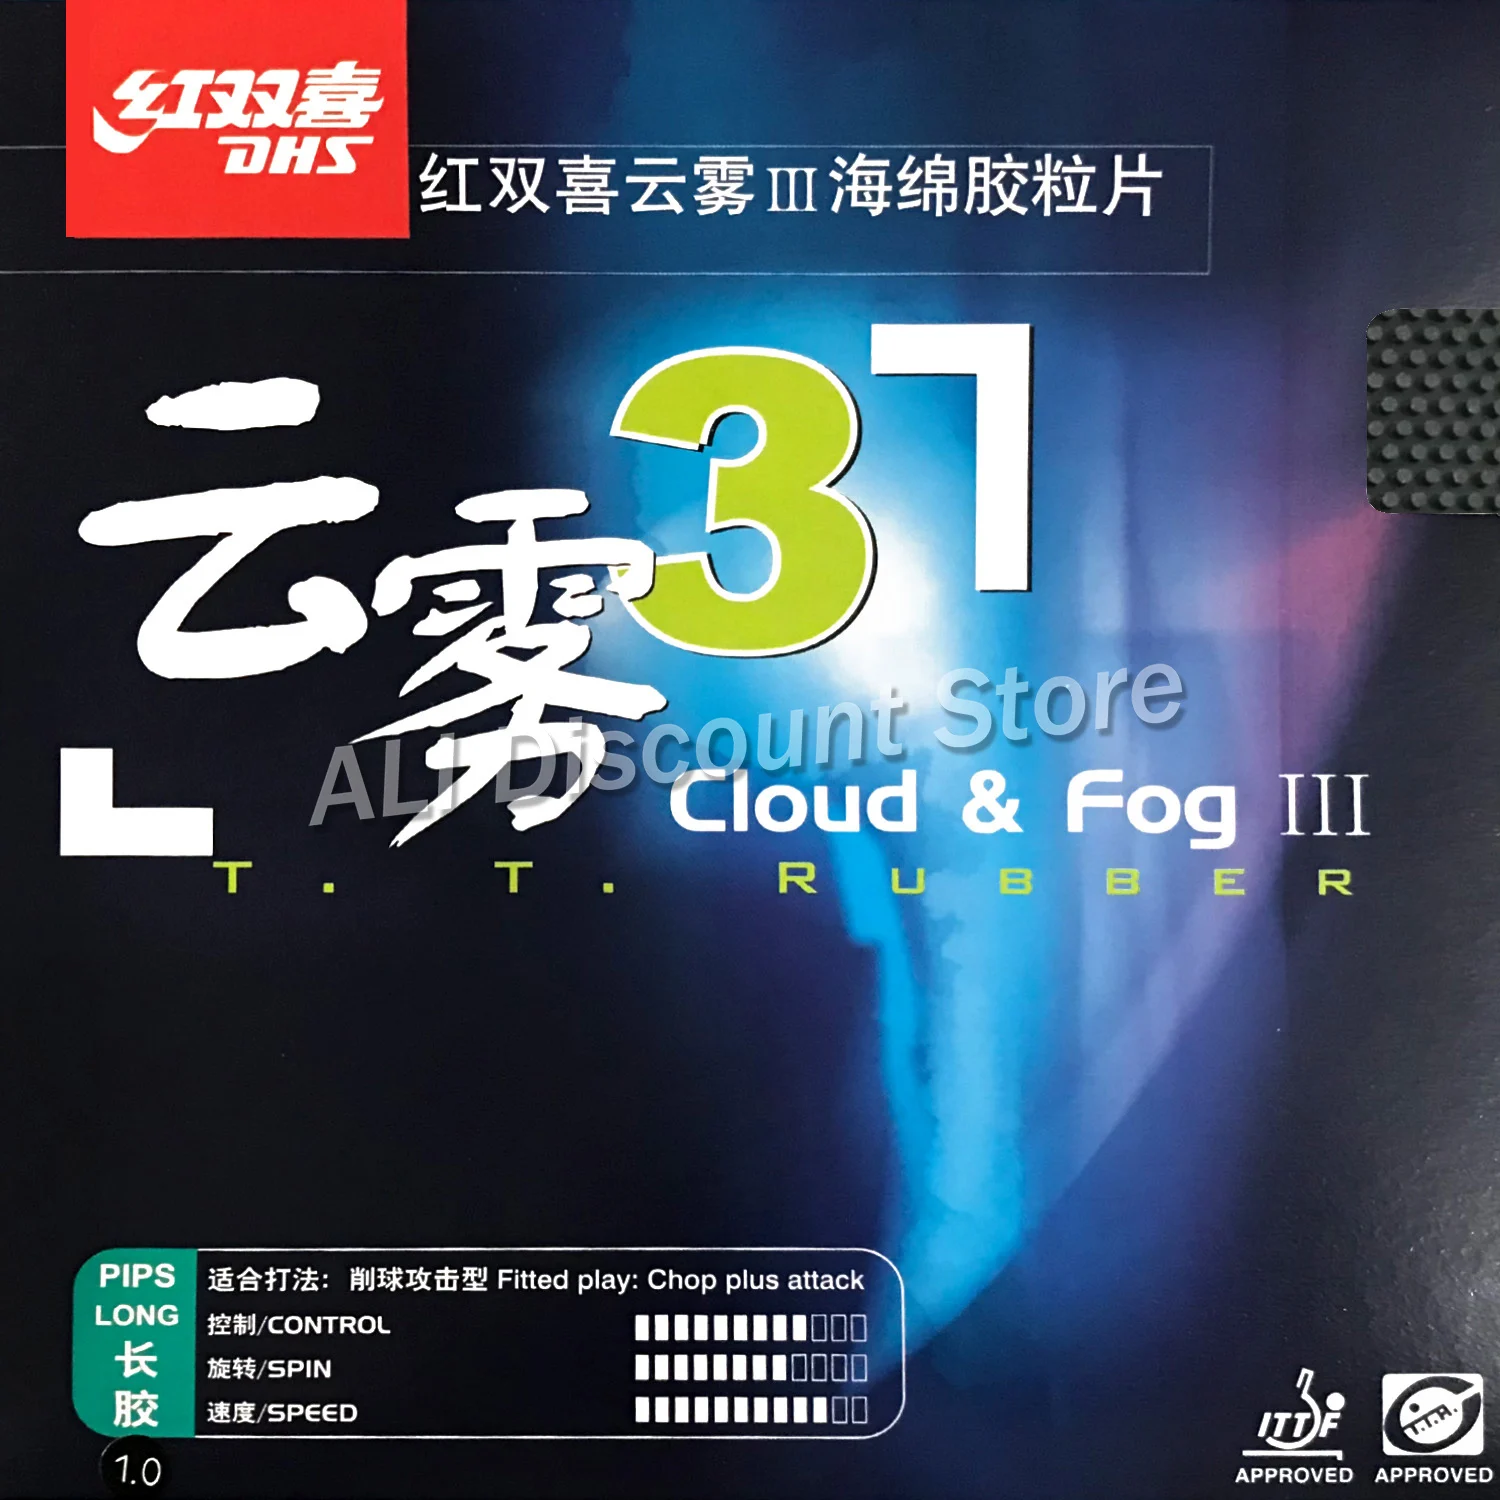 DHS Cloud & fog3 (разделочная плюс атаки) длинные пунктов-out Настольный теннис (пинг-понг) Резина с губкой